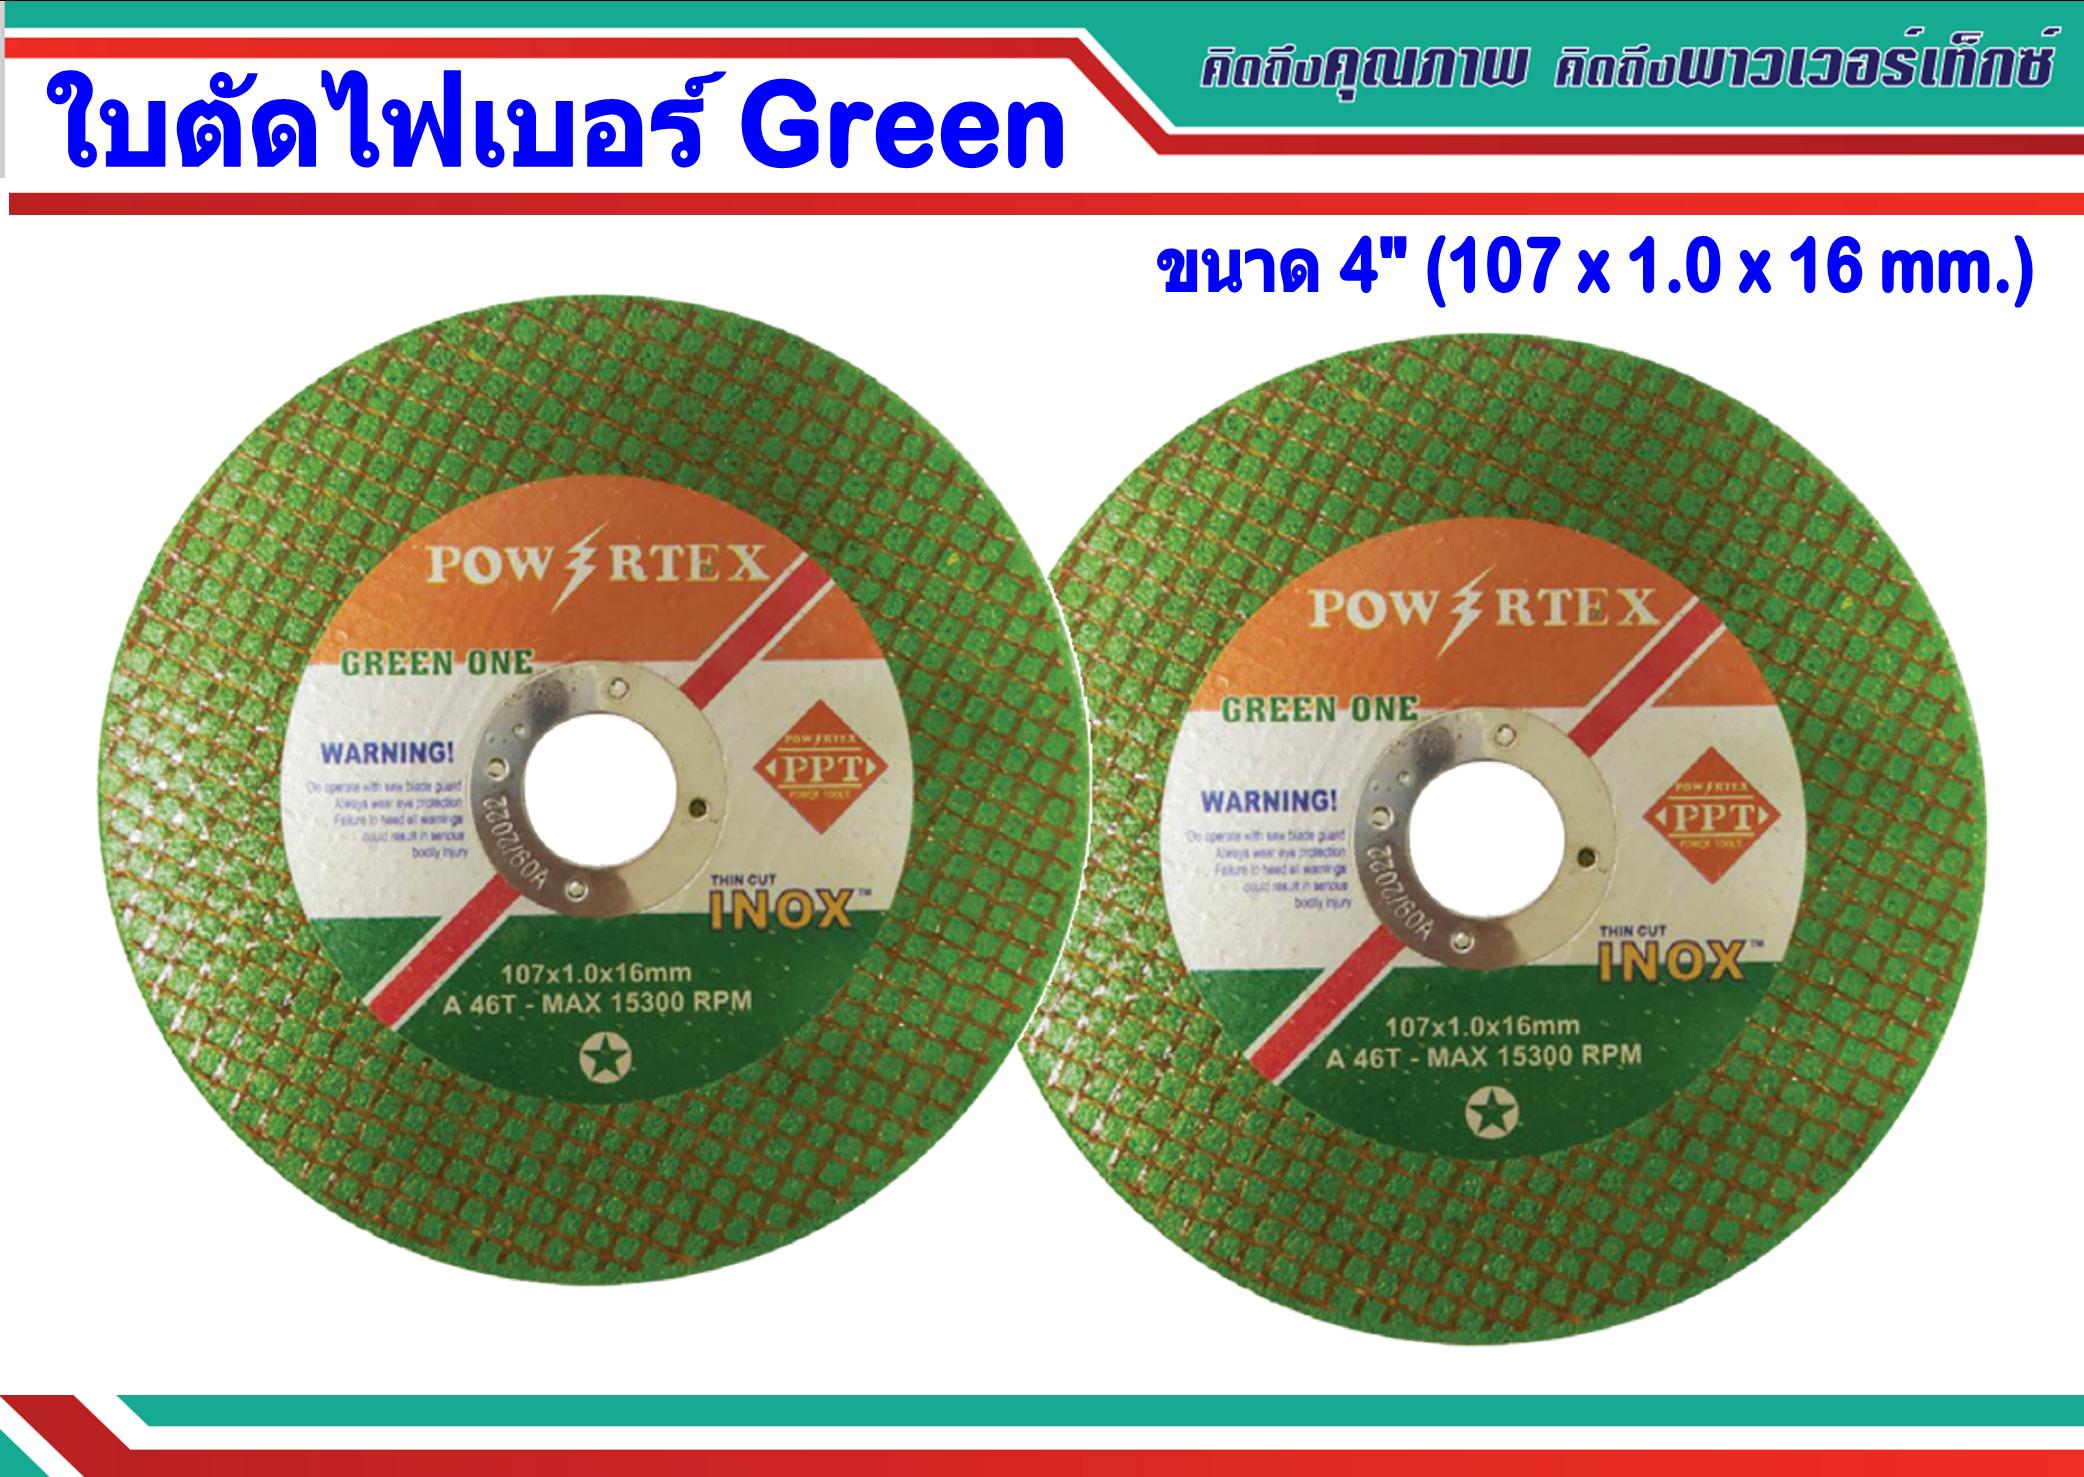 ไฟเบอร์ตัดเหล็ก 4 นิ้ว POWERTEX SUPER THIN สีเขียว (107 x 1.0 x 16mm.)